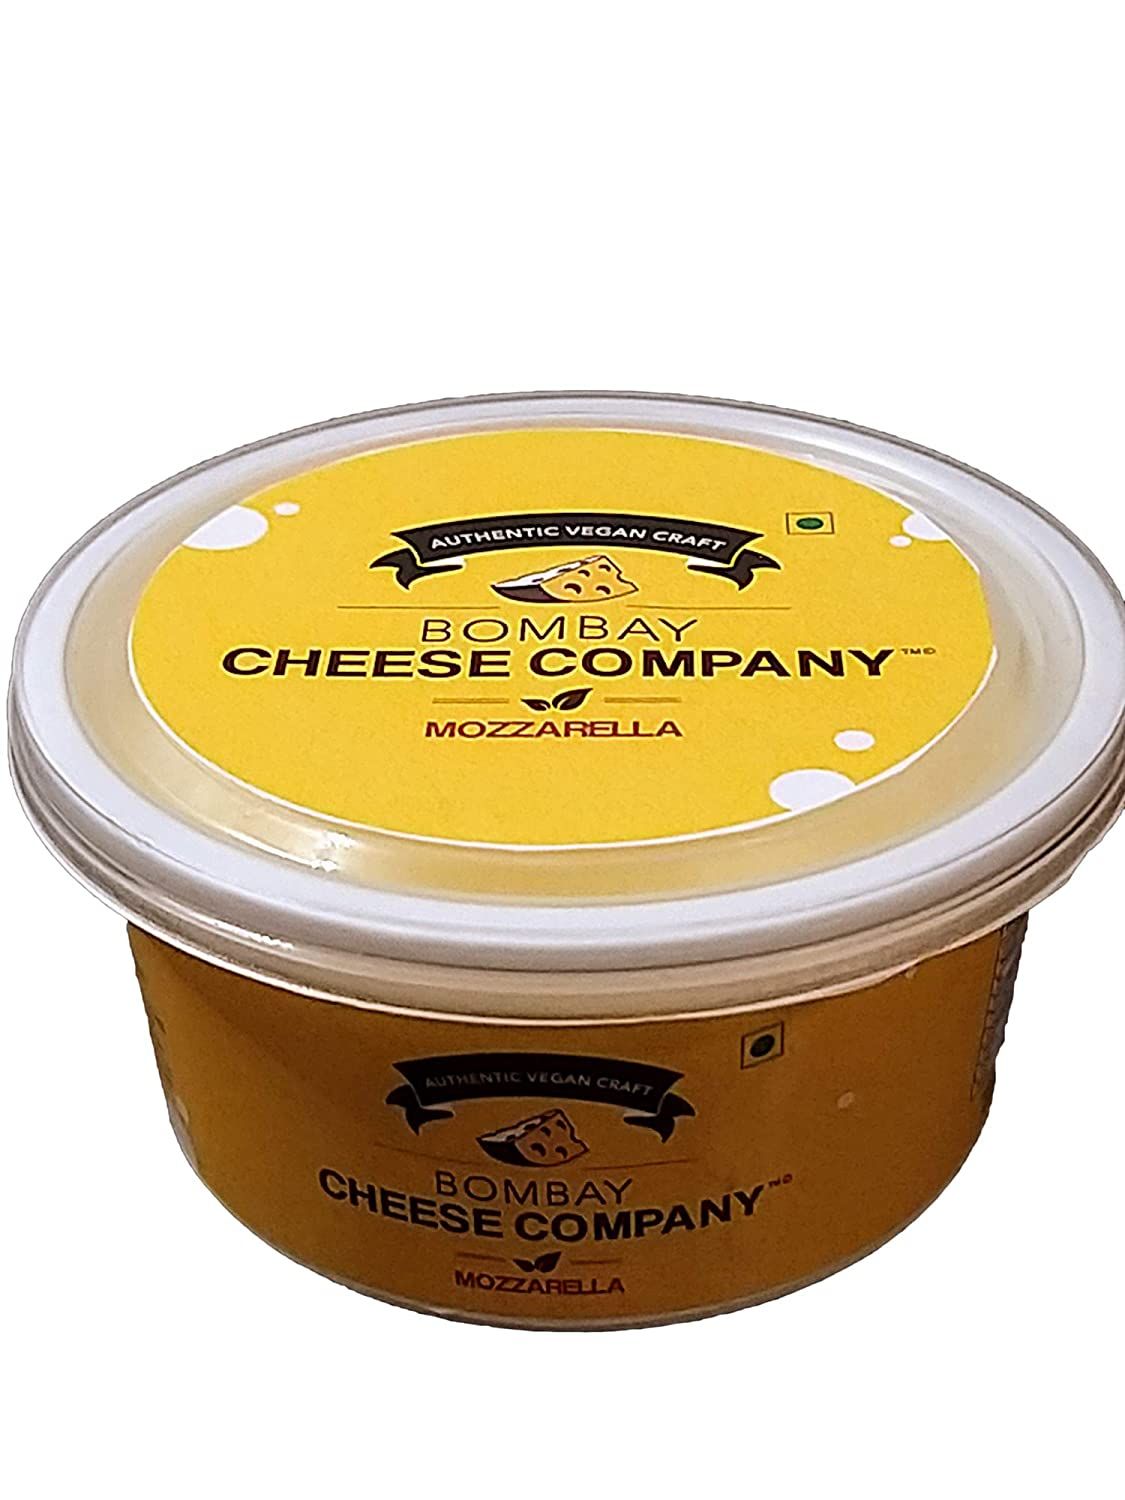 Bombay Cheese Company's Mozzarella Cheese Image